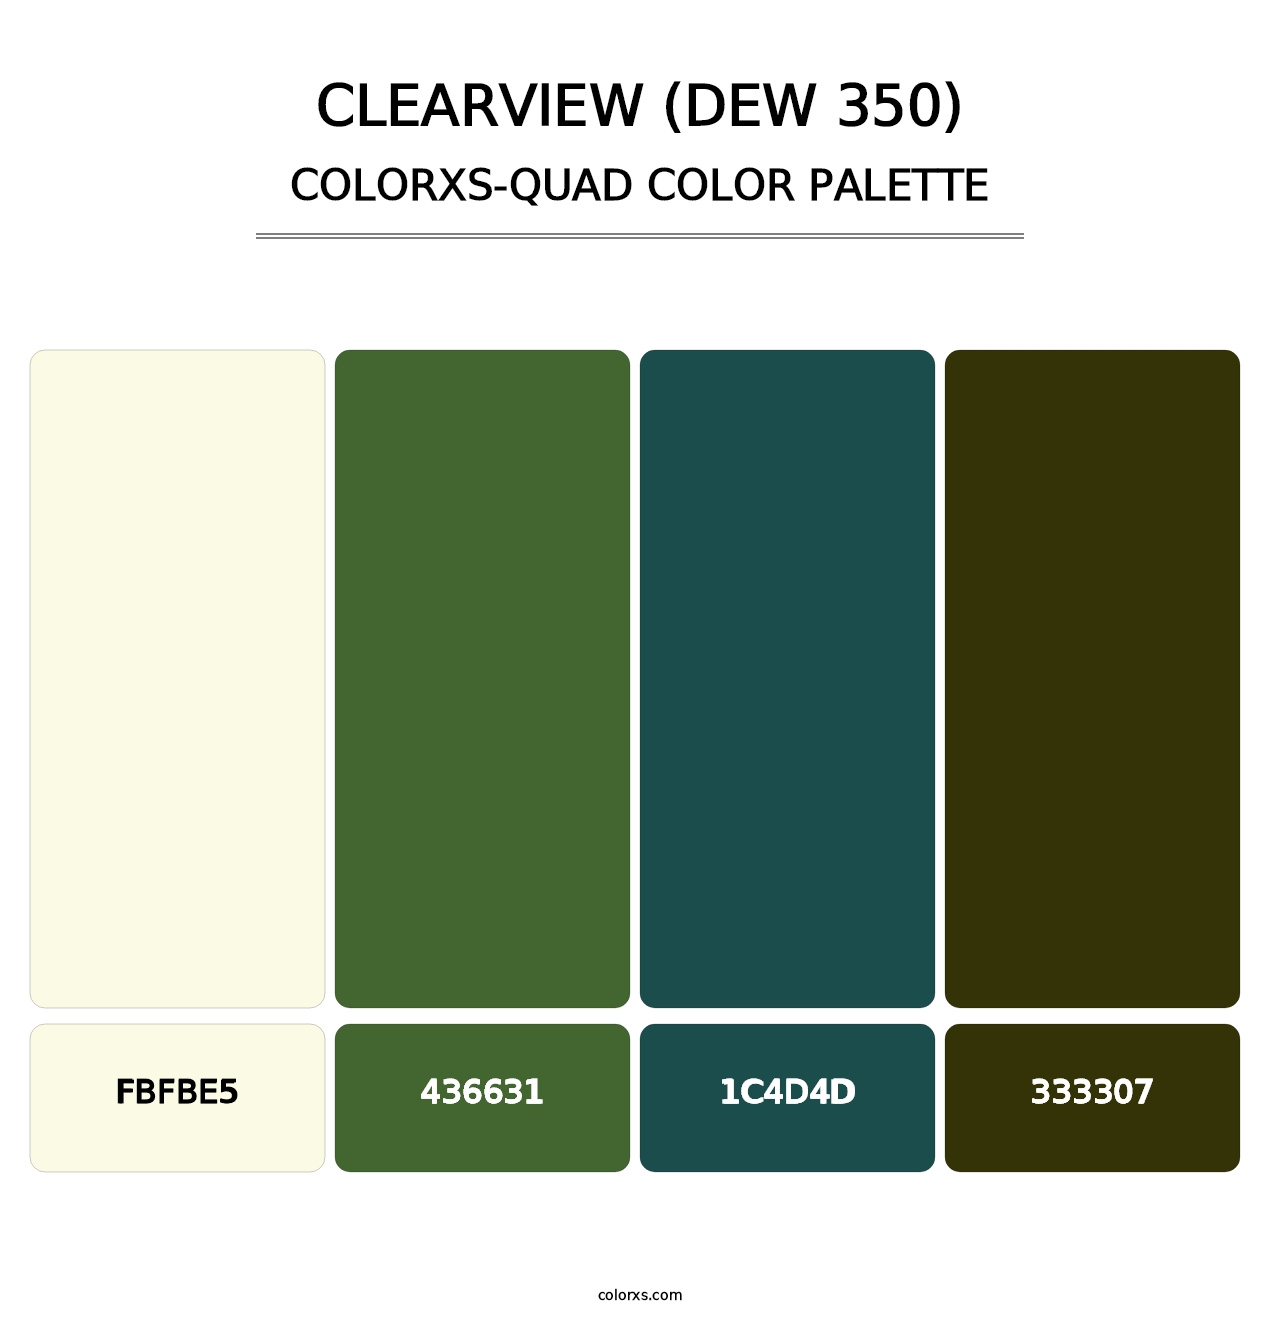 Clearview (DEW 350) - Colorxs Quad Palette